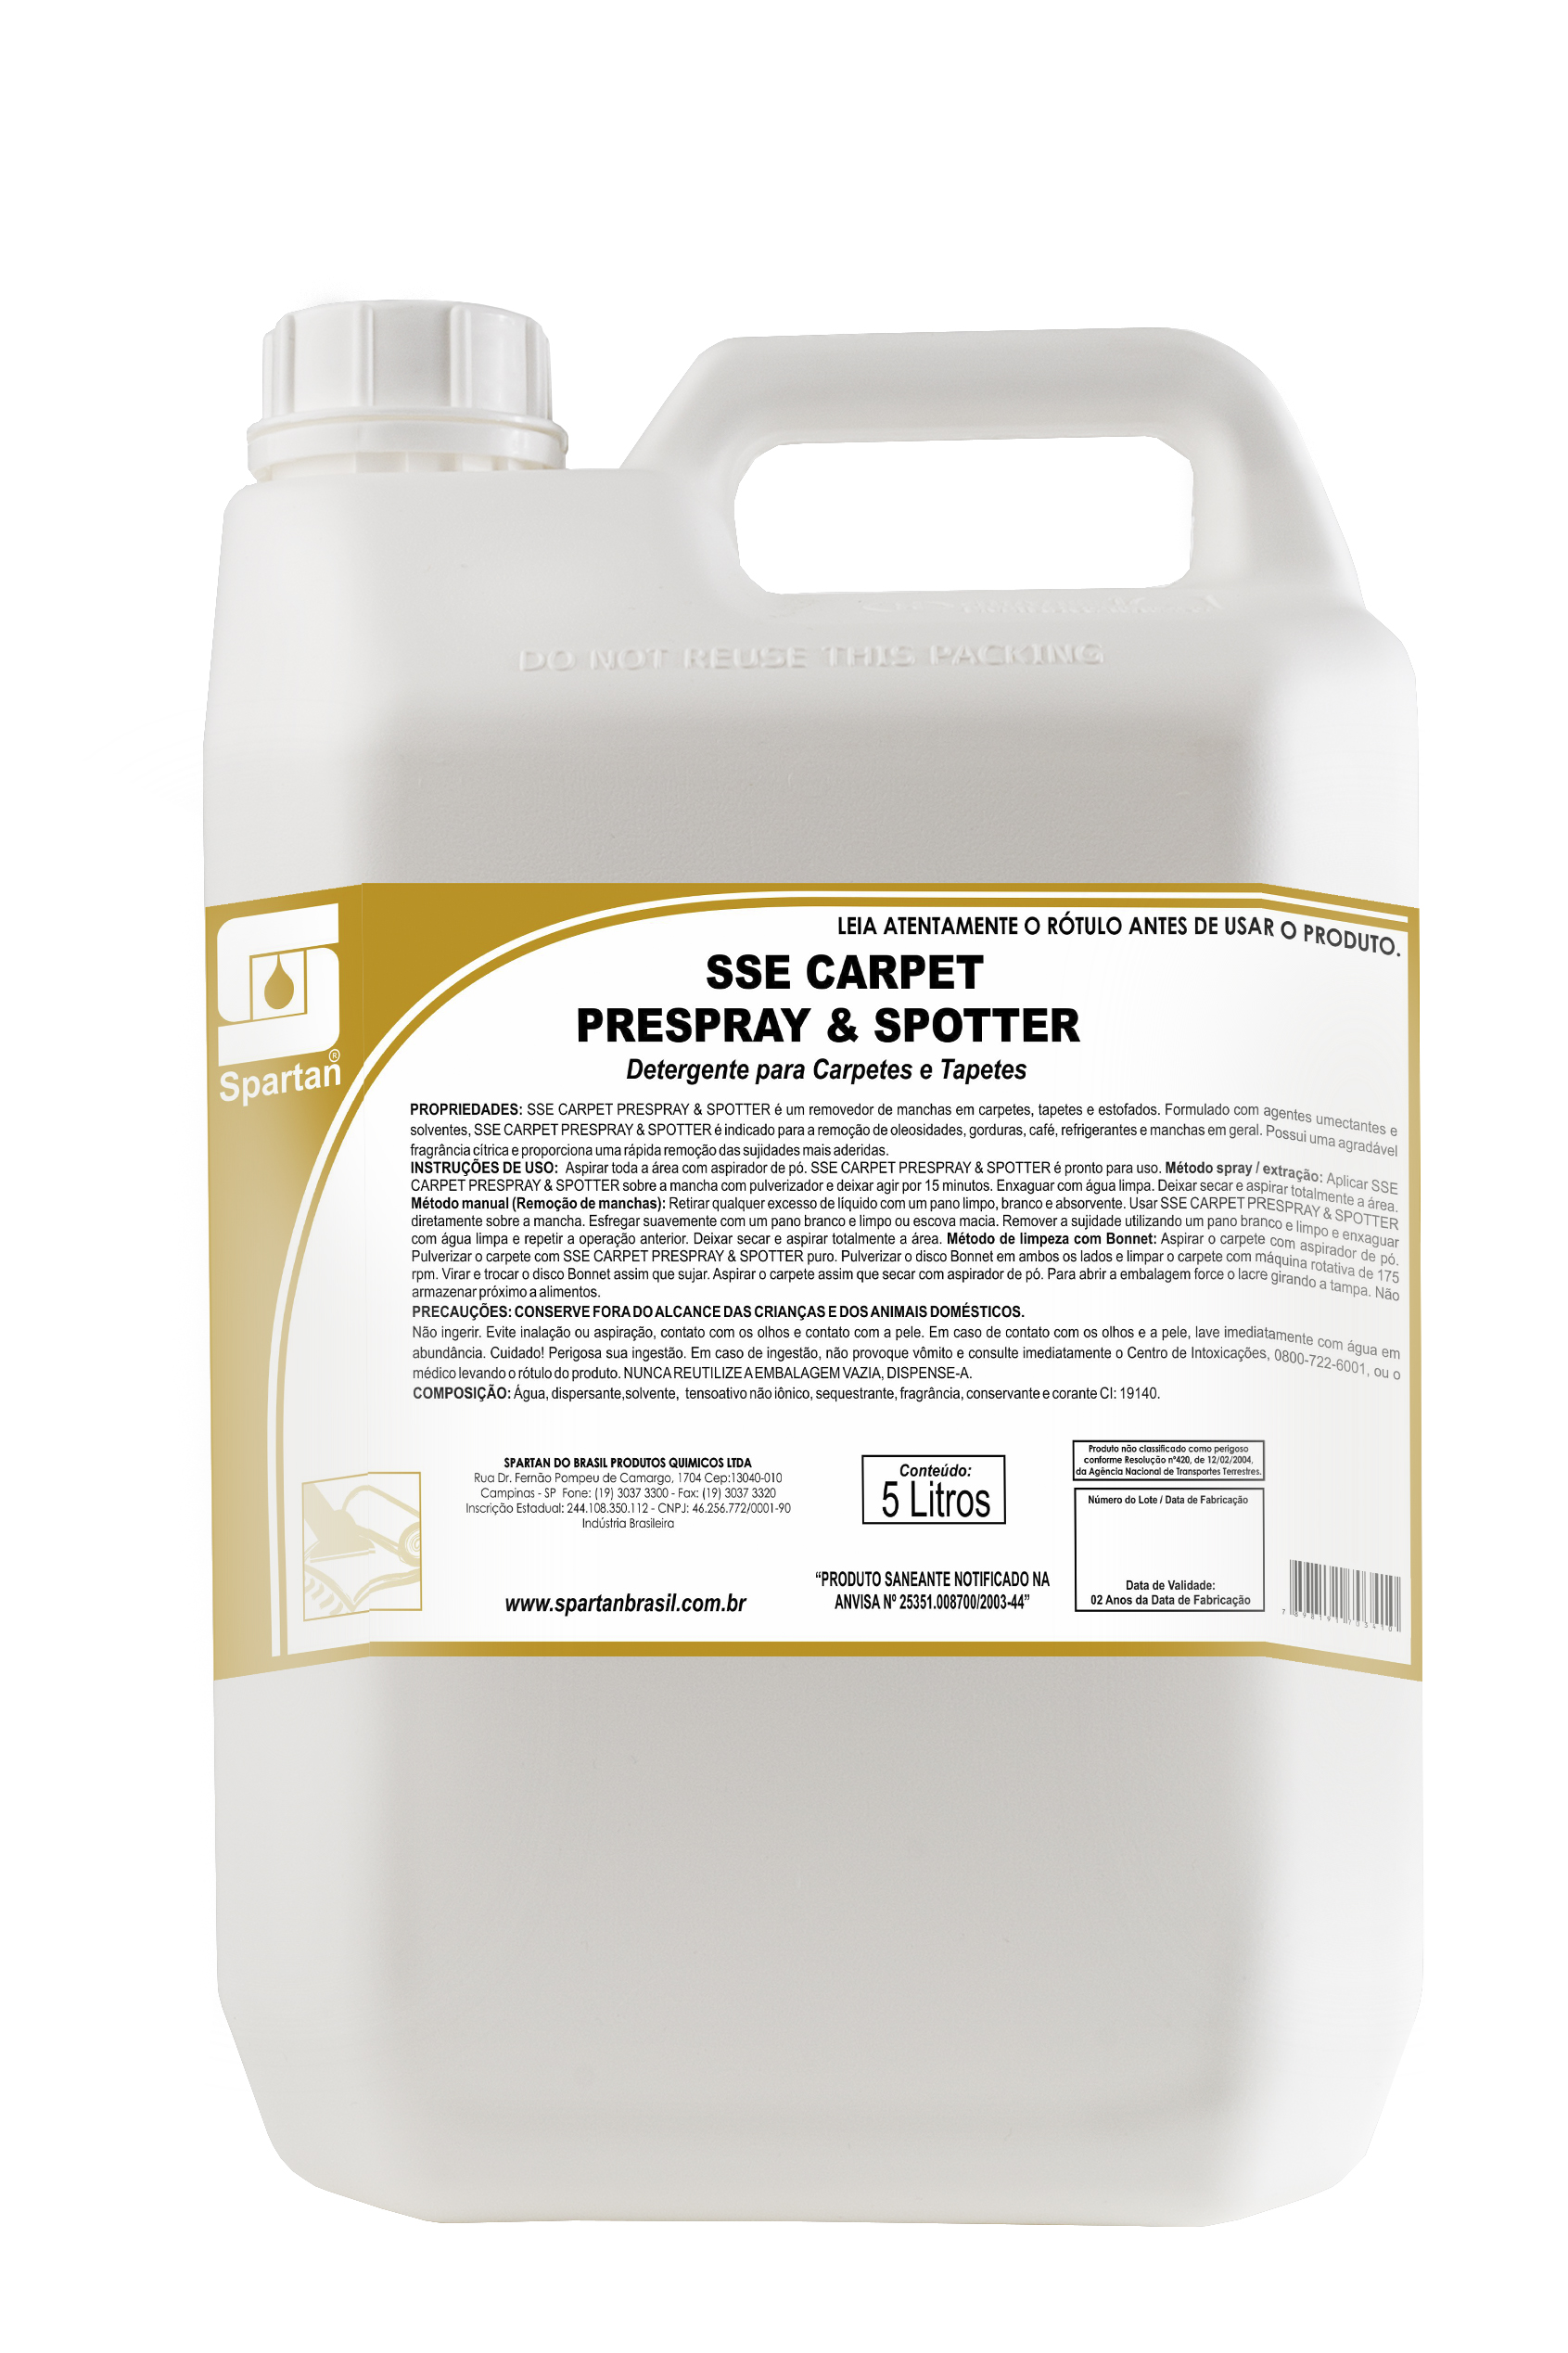 Imagem ilustrativa do produto: SSE Carpet Prespray & Spotter